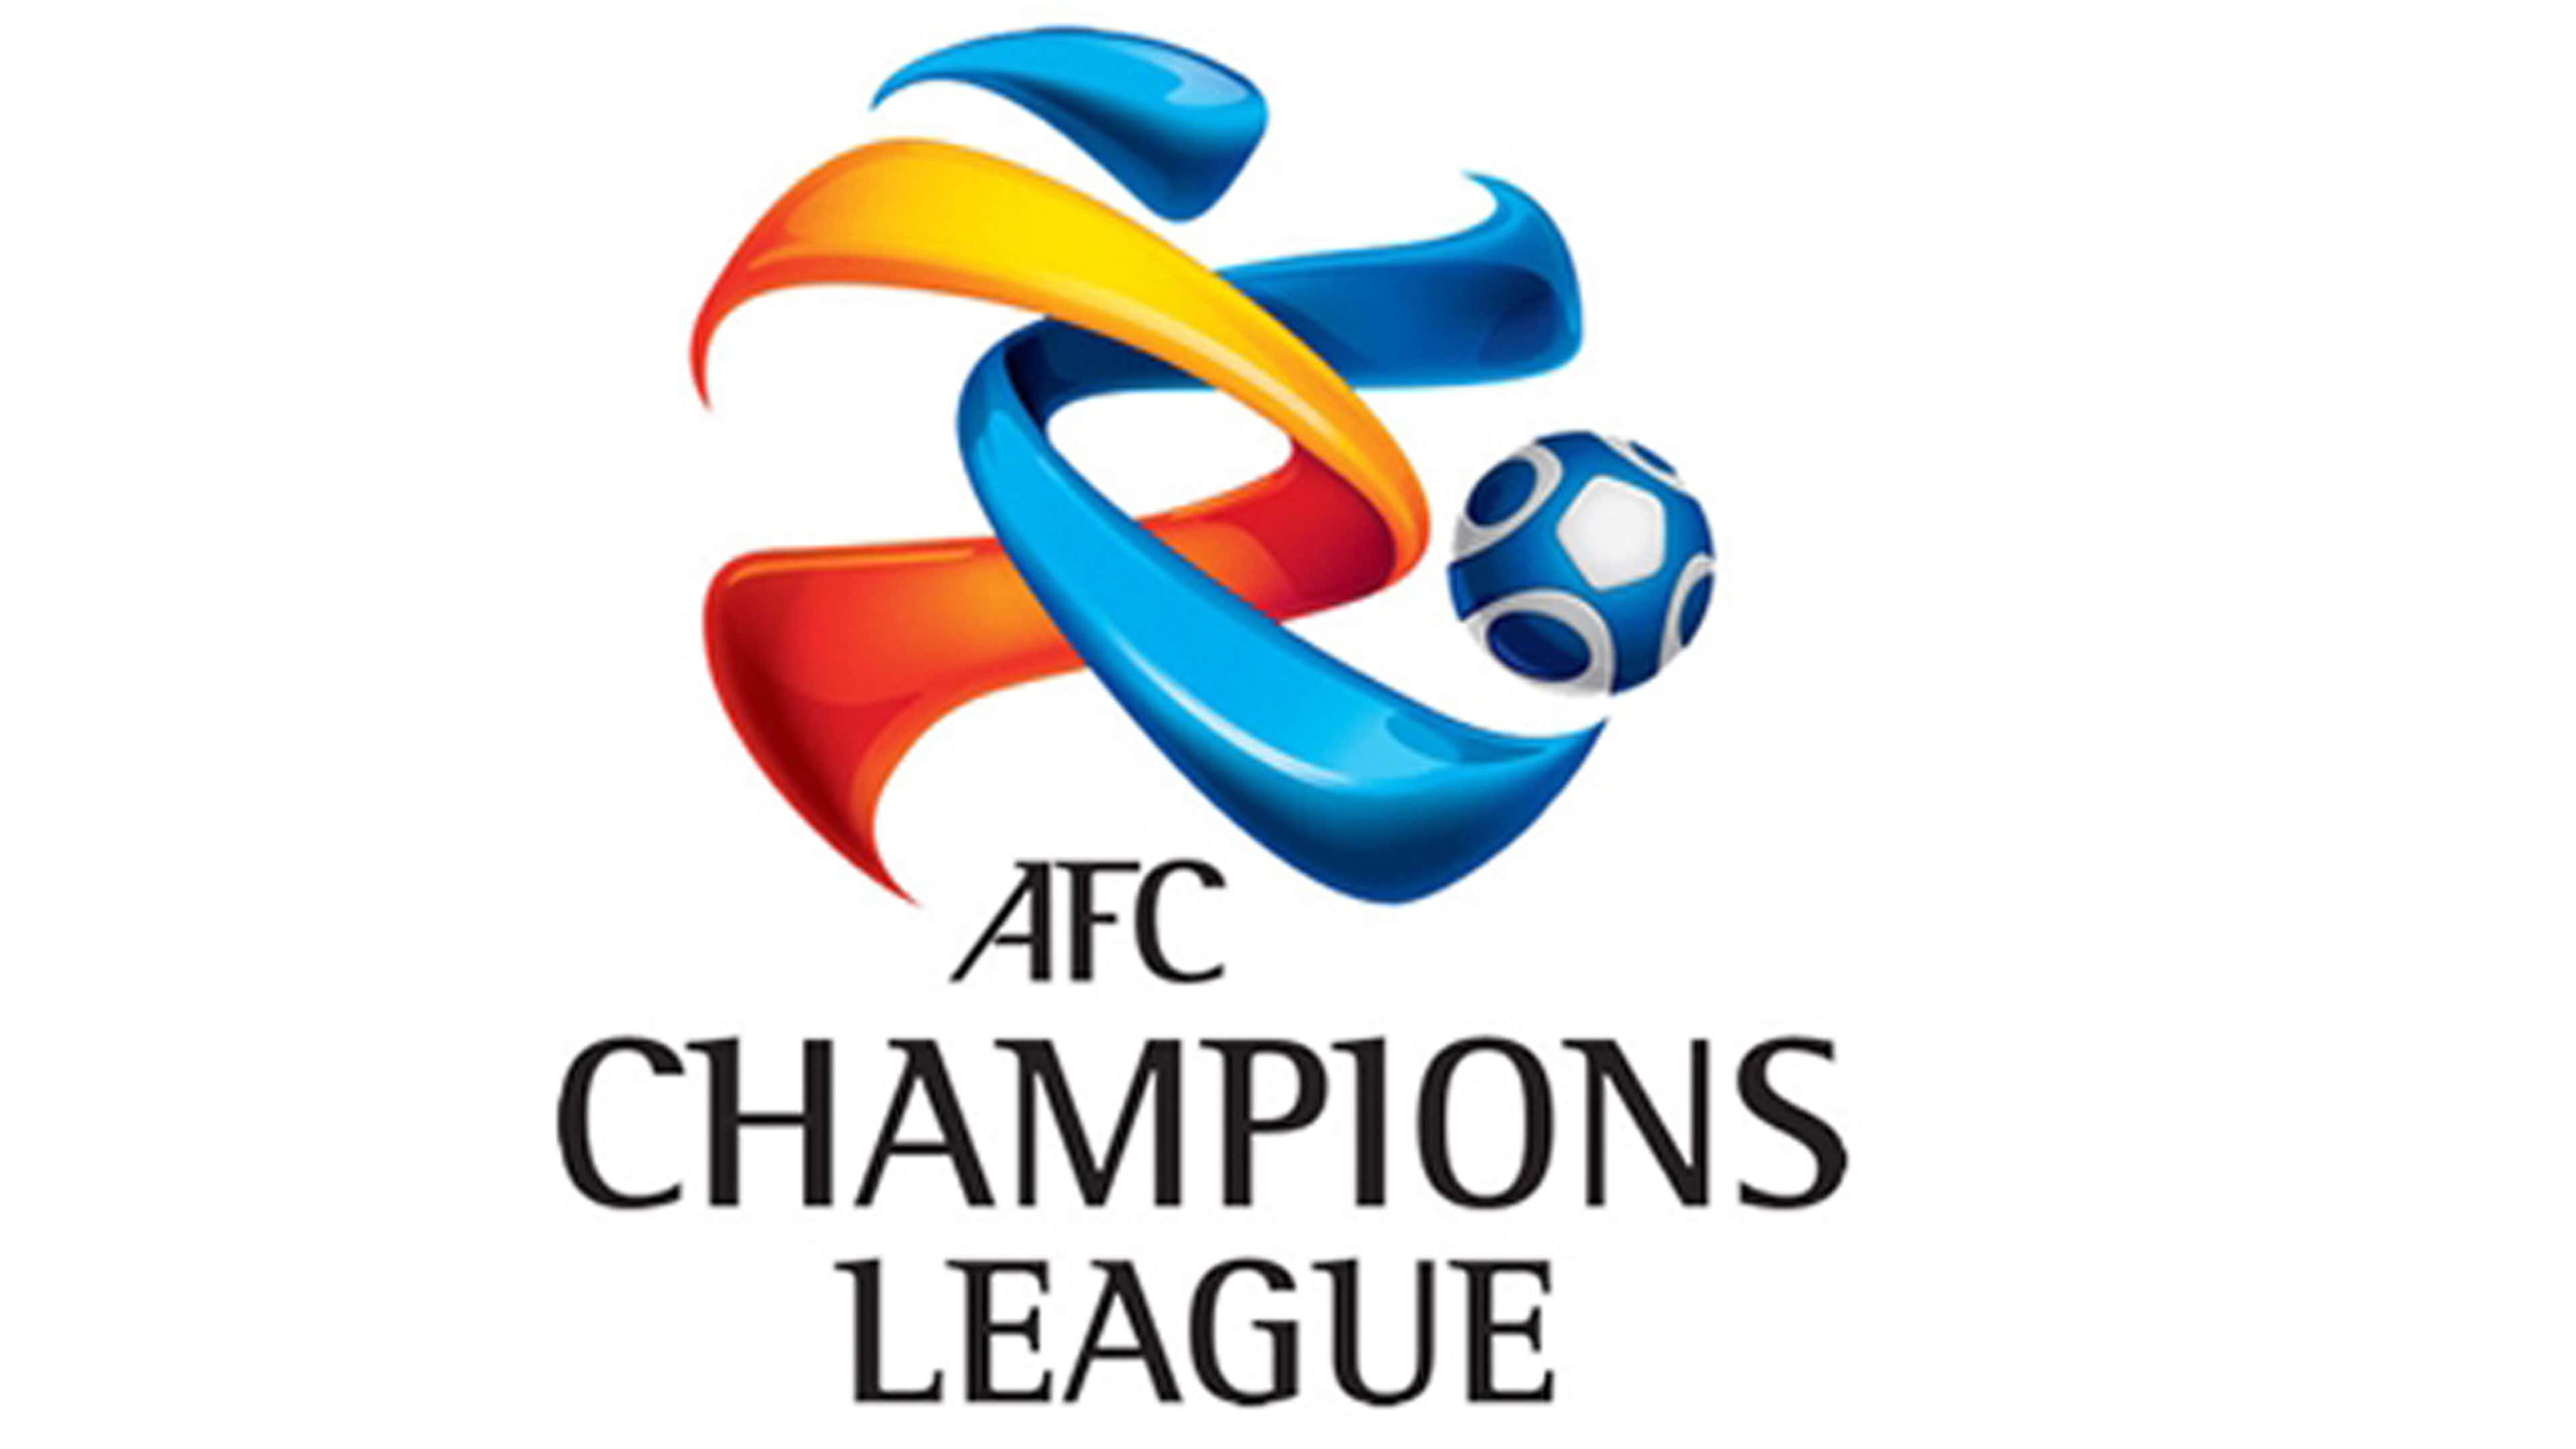 Champions league, AFC